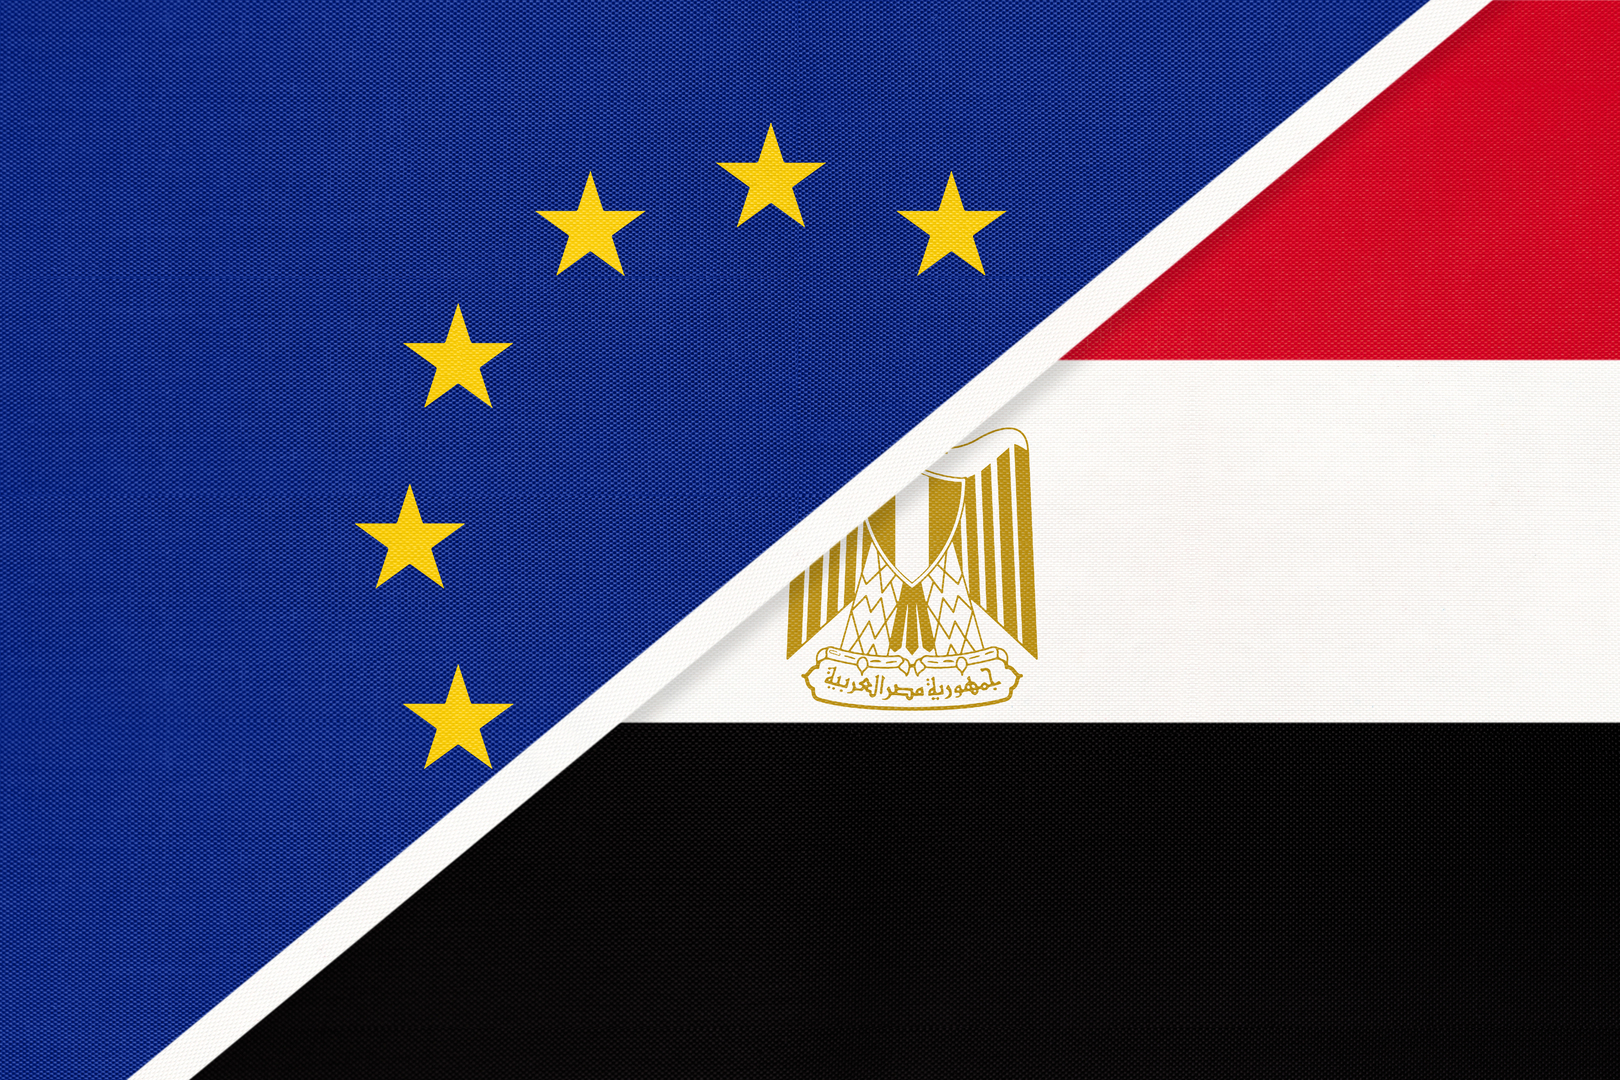 الخارجية المصرية: فارهيلي يبلغ شكري بإقرار الاتحاد الأوروبي دعما ماليا واقتصاديا إضافيا لمصر